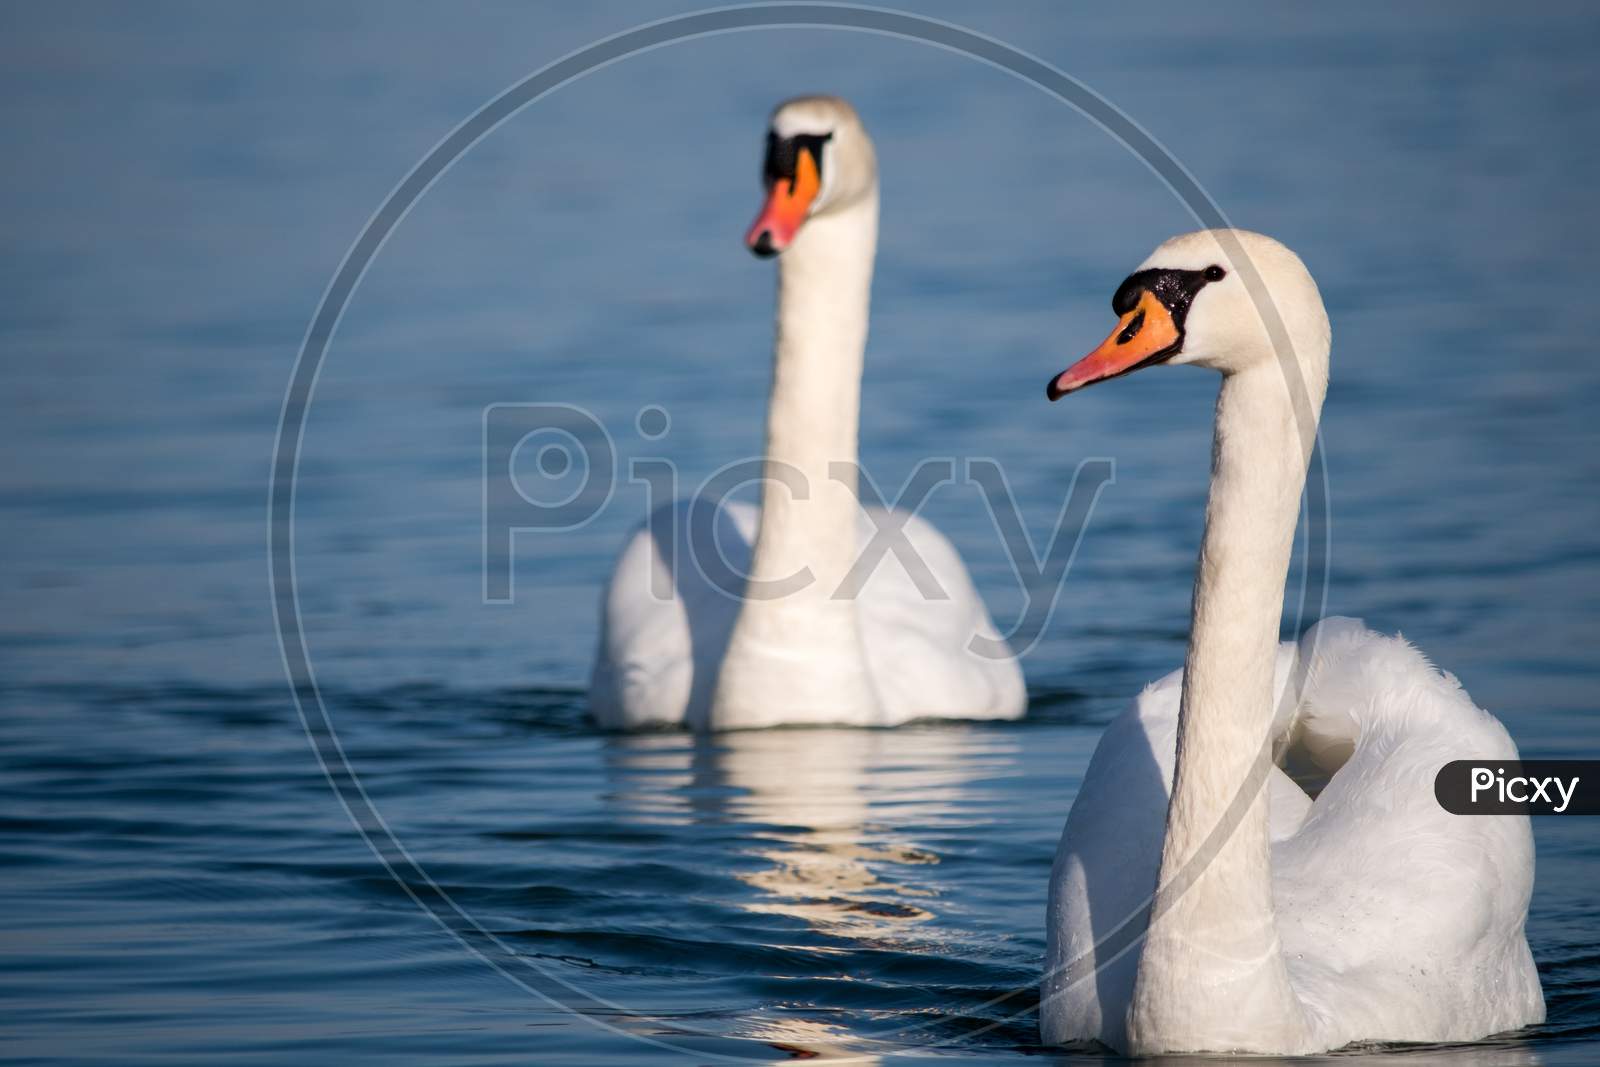 White Swans Swimming In The Danube River In Serbia